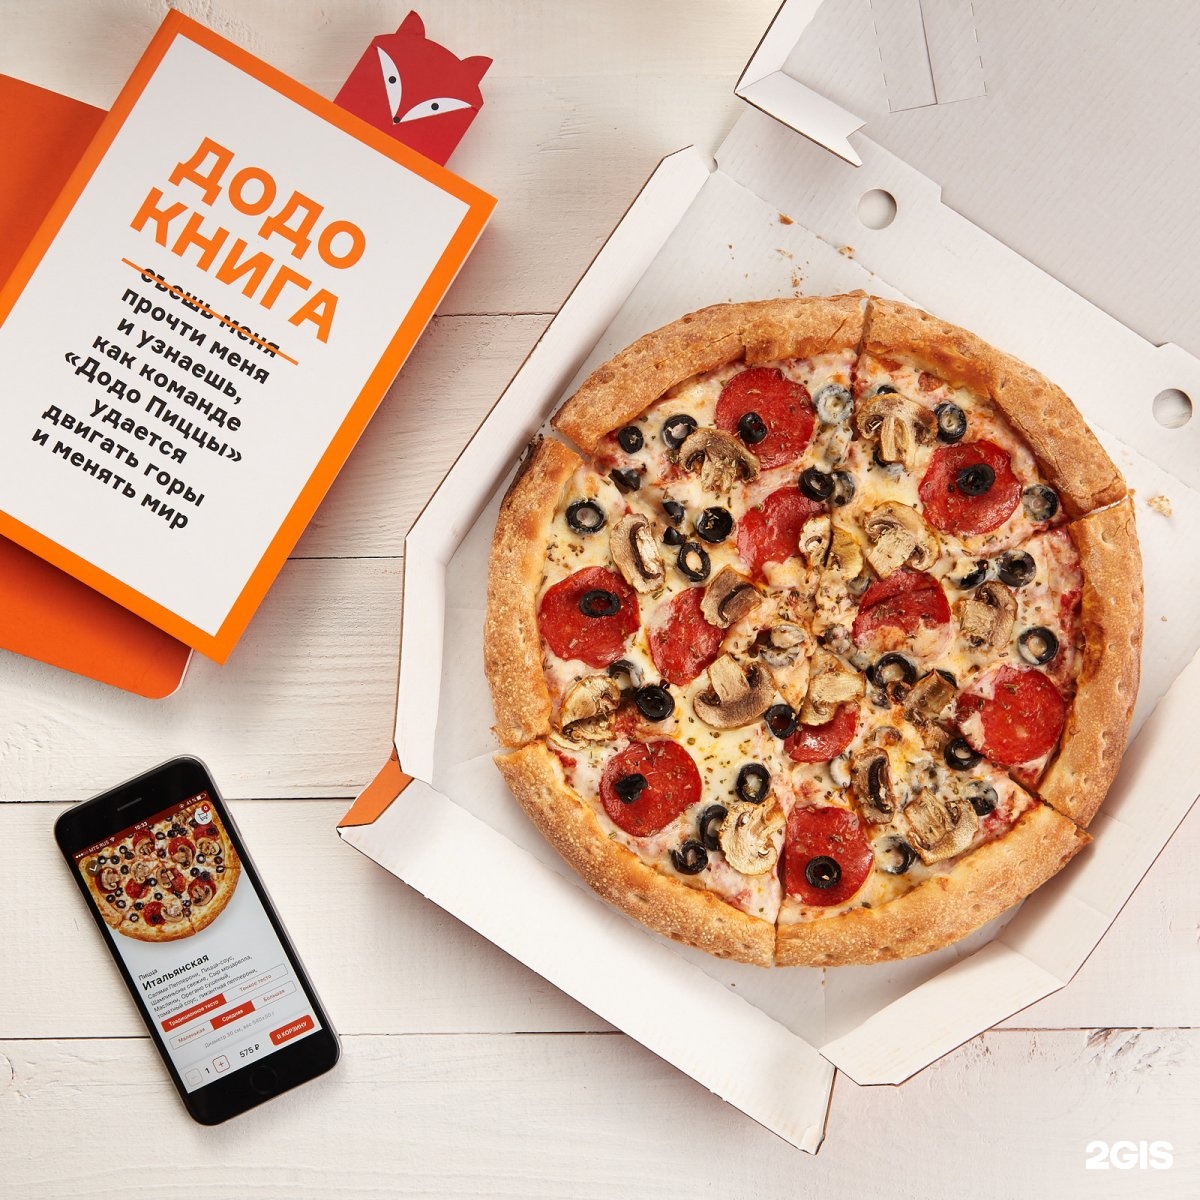 Спб доставка пиццы телефон. Додо пицца. Реклама пиццы. Реклама на пиццу в пиццерии. Додо пицца реклама.